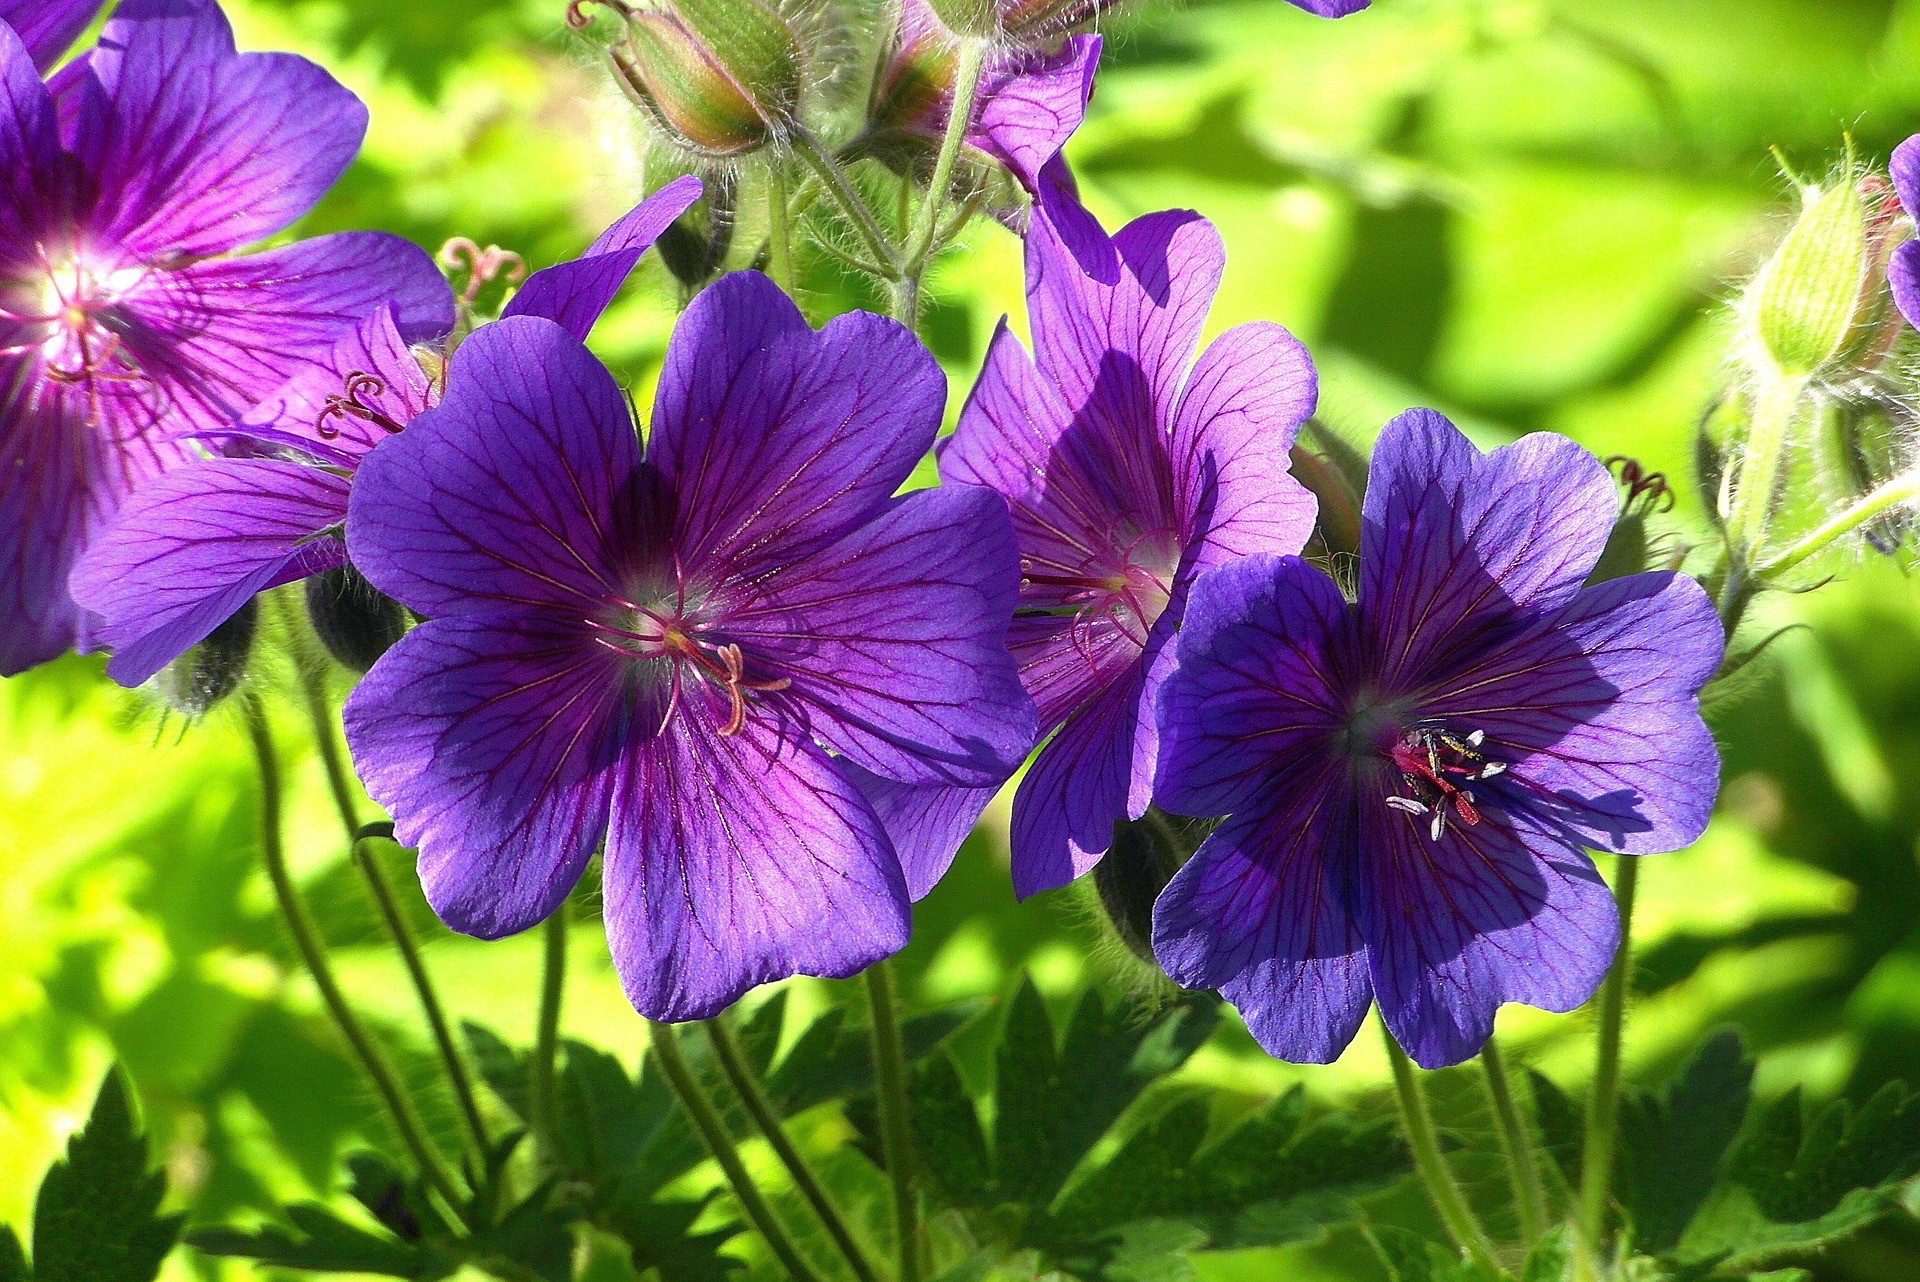 Ý nghĩa của hoa Violet mang lại sự tinh tế và giàu ý nghĩa, đặc biệt là trong việc tôn vinh tình yêu và thể hiện lòng thành kính. Hãy xem hình ảnh hoa Violet để thấy được rằng đúng như vậy, nó có thể mang lại những cảm xúc đầy ý nghĩa cho chúng ta!